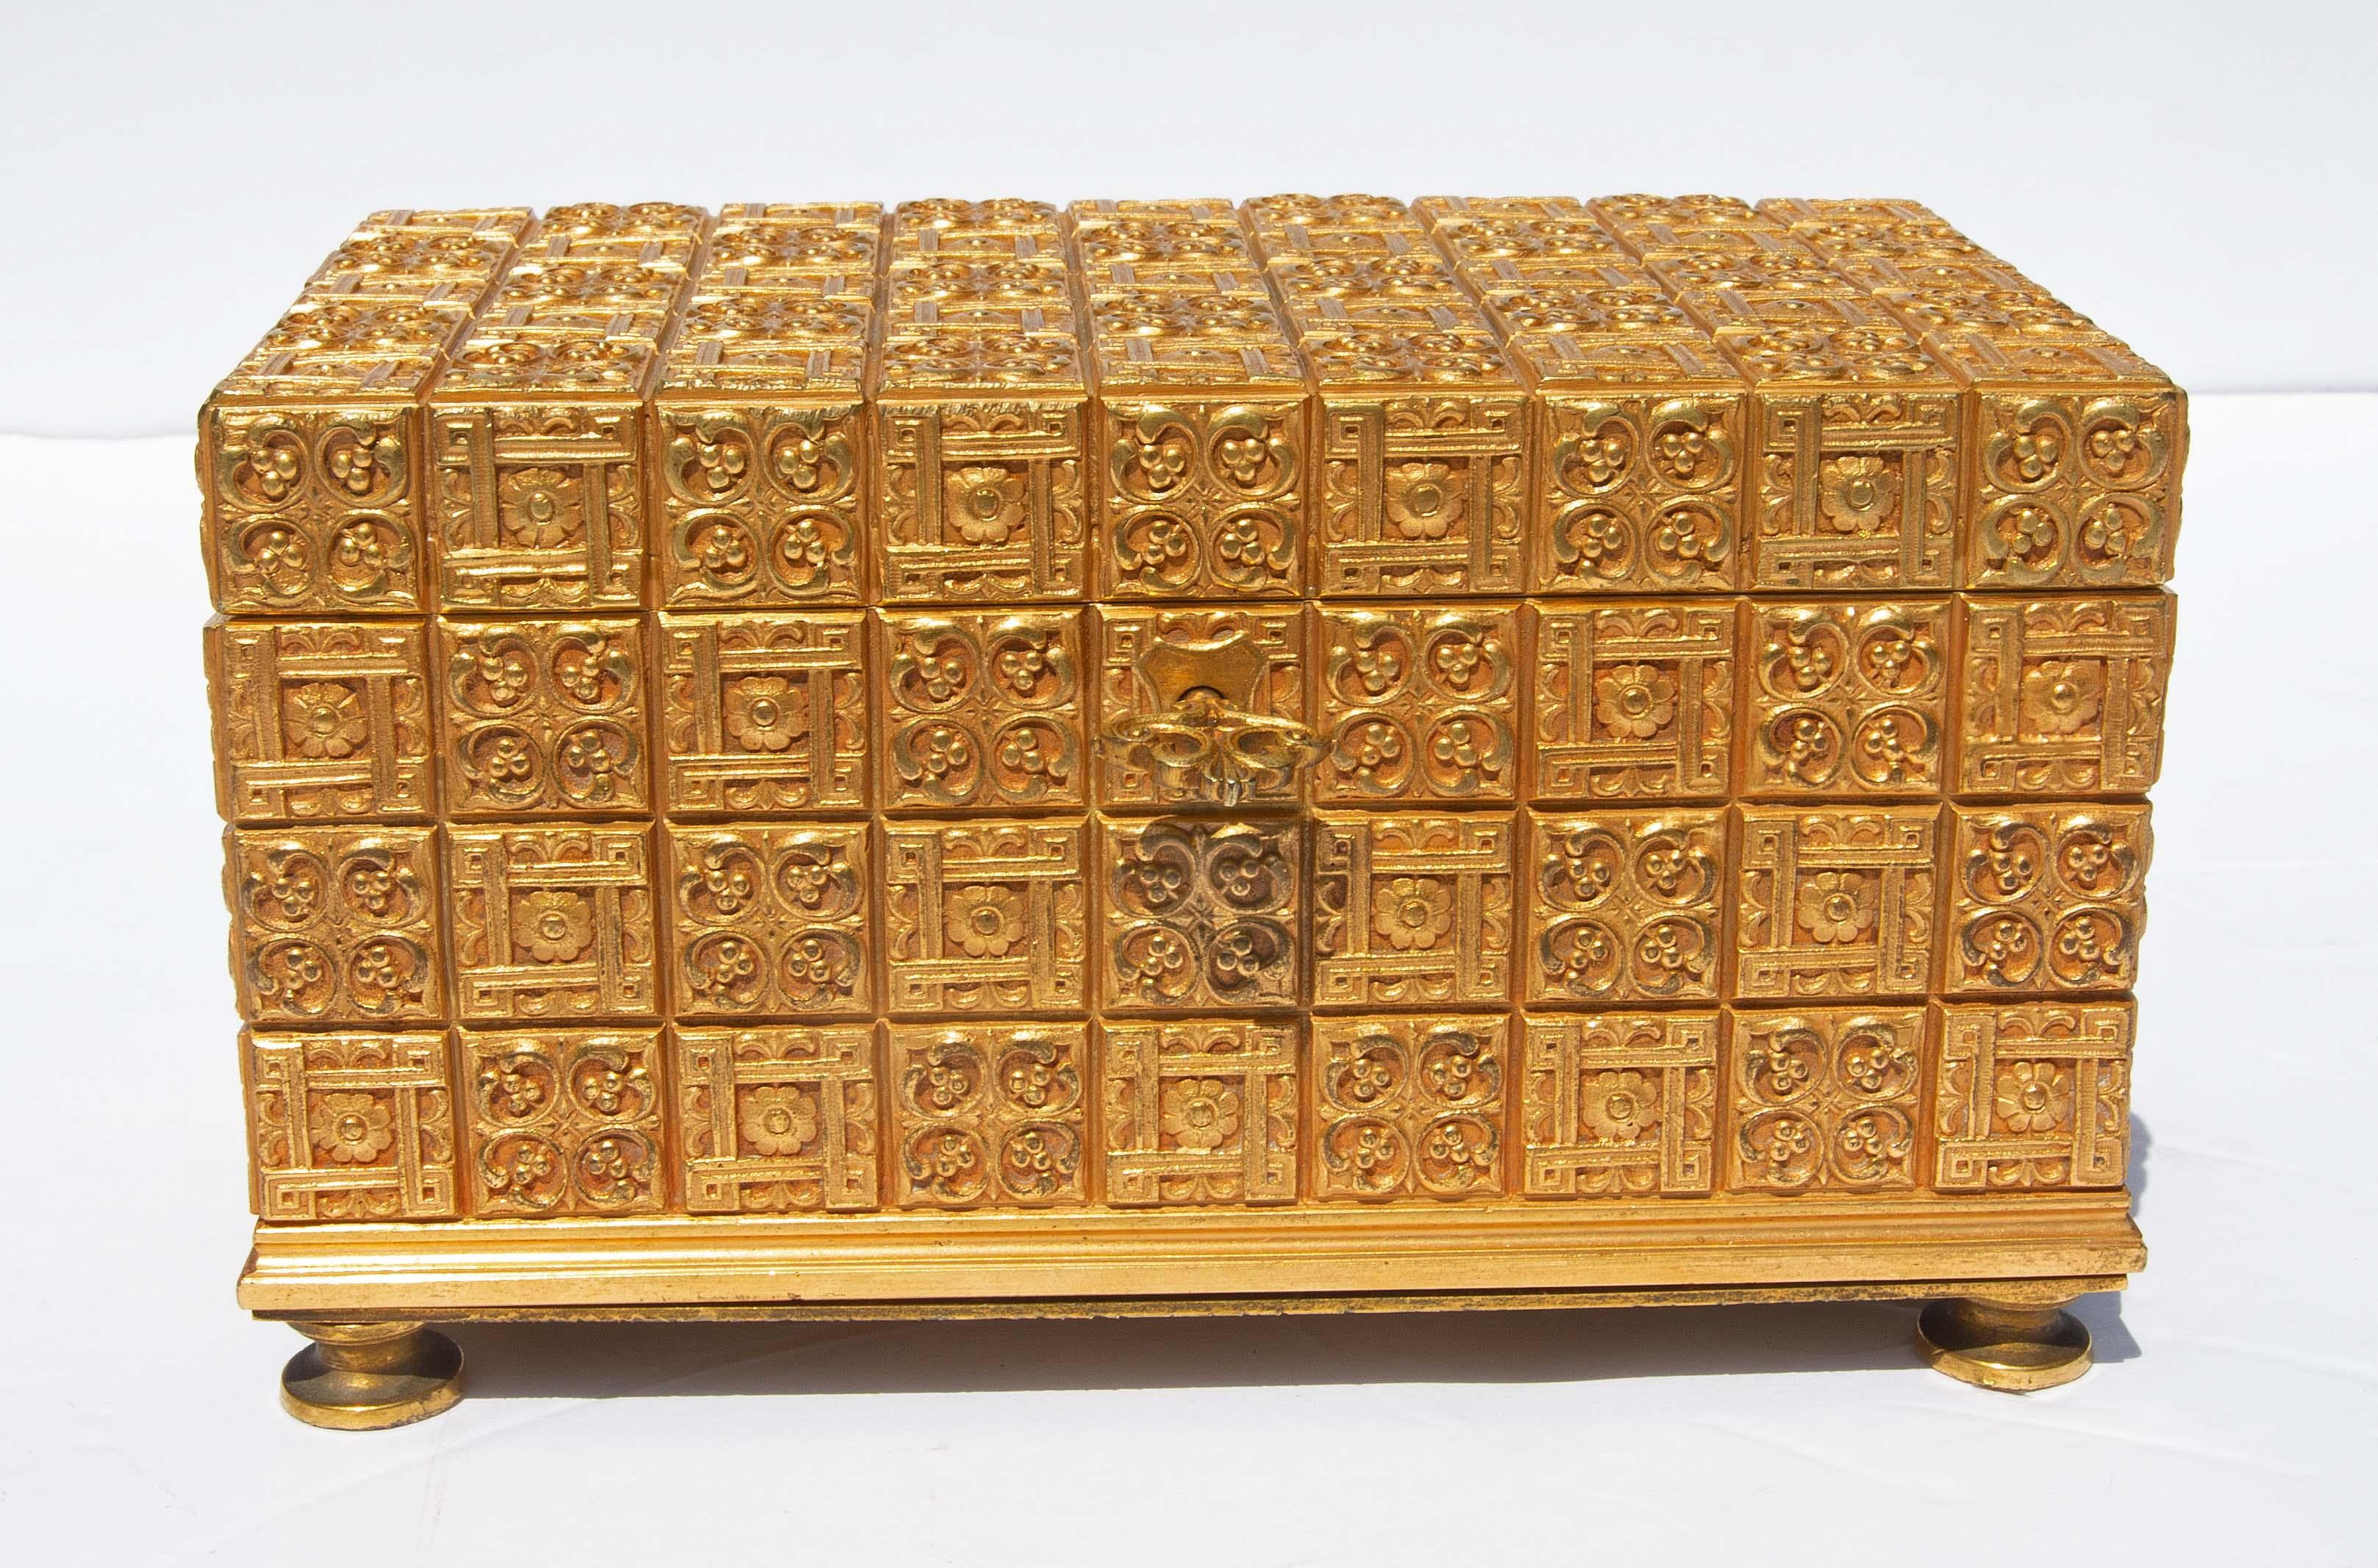 Rare boîte à bijoux des studios Tiffany en bronze doré. La plus belle dorure de Tiffany dans un ton d'or vénitien. Un modèle rare. Après une recherche exhaustive, je n'ai pu trouver qu'un seul autre exemple de ce modèle. Il s'agit d'une boîte signée